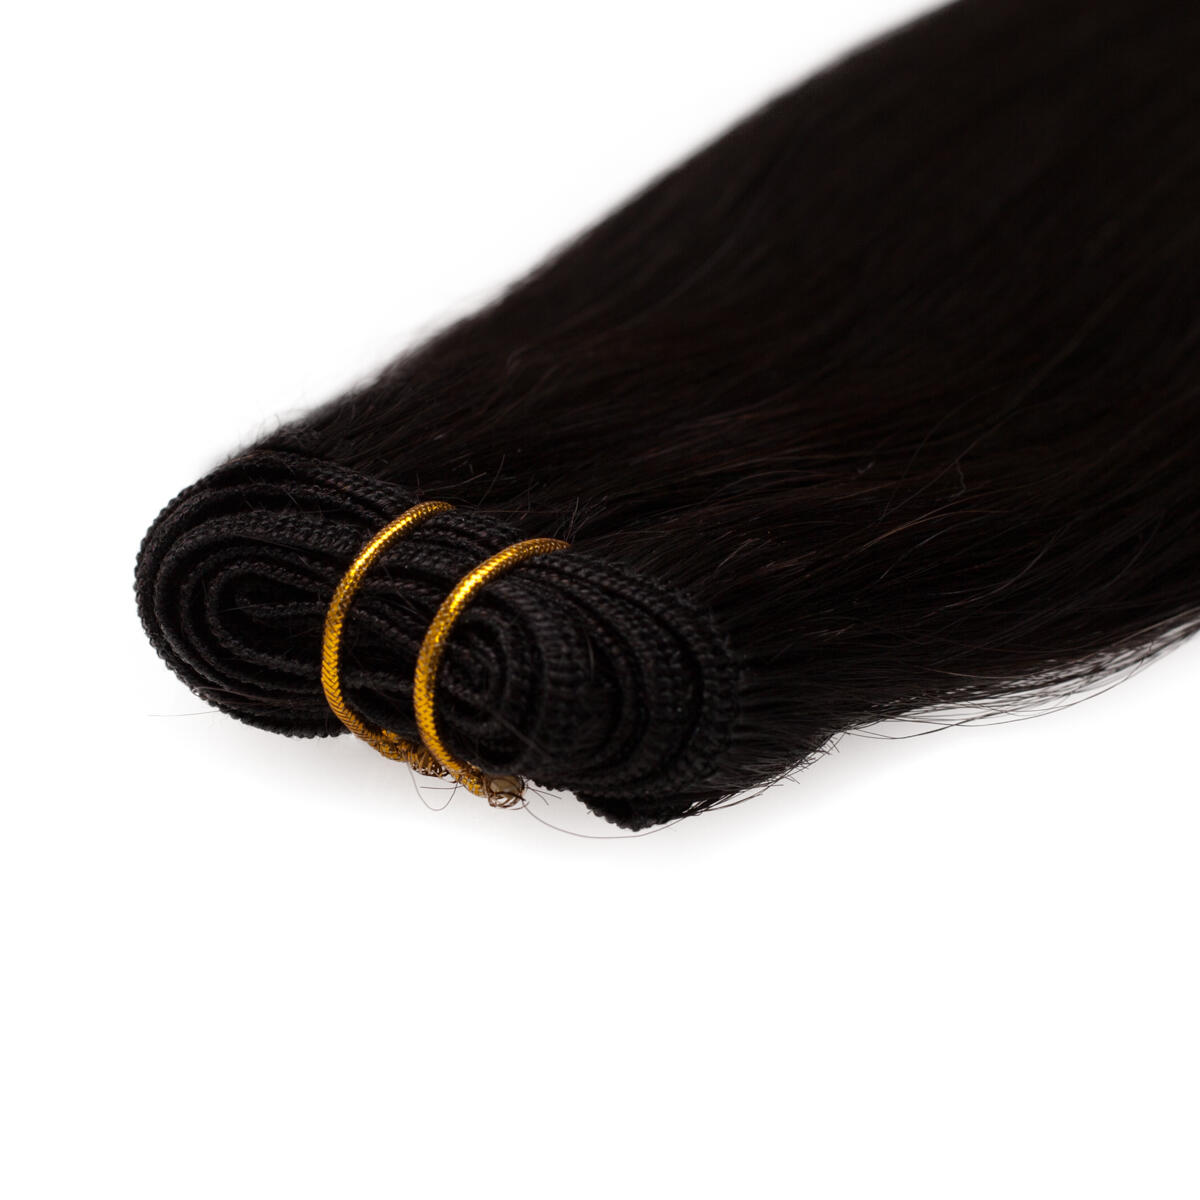 Haartresse Original Glatt 1.2 Black Brown 50 cm